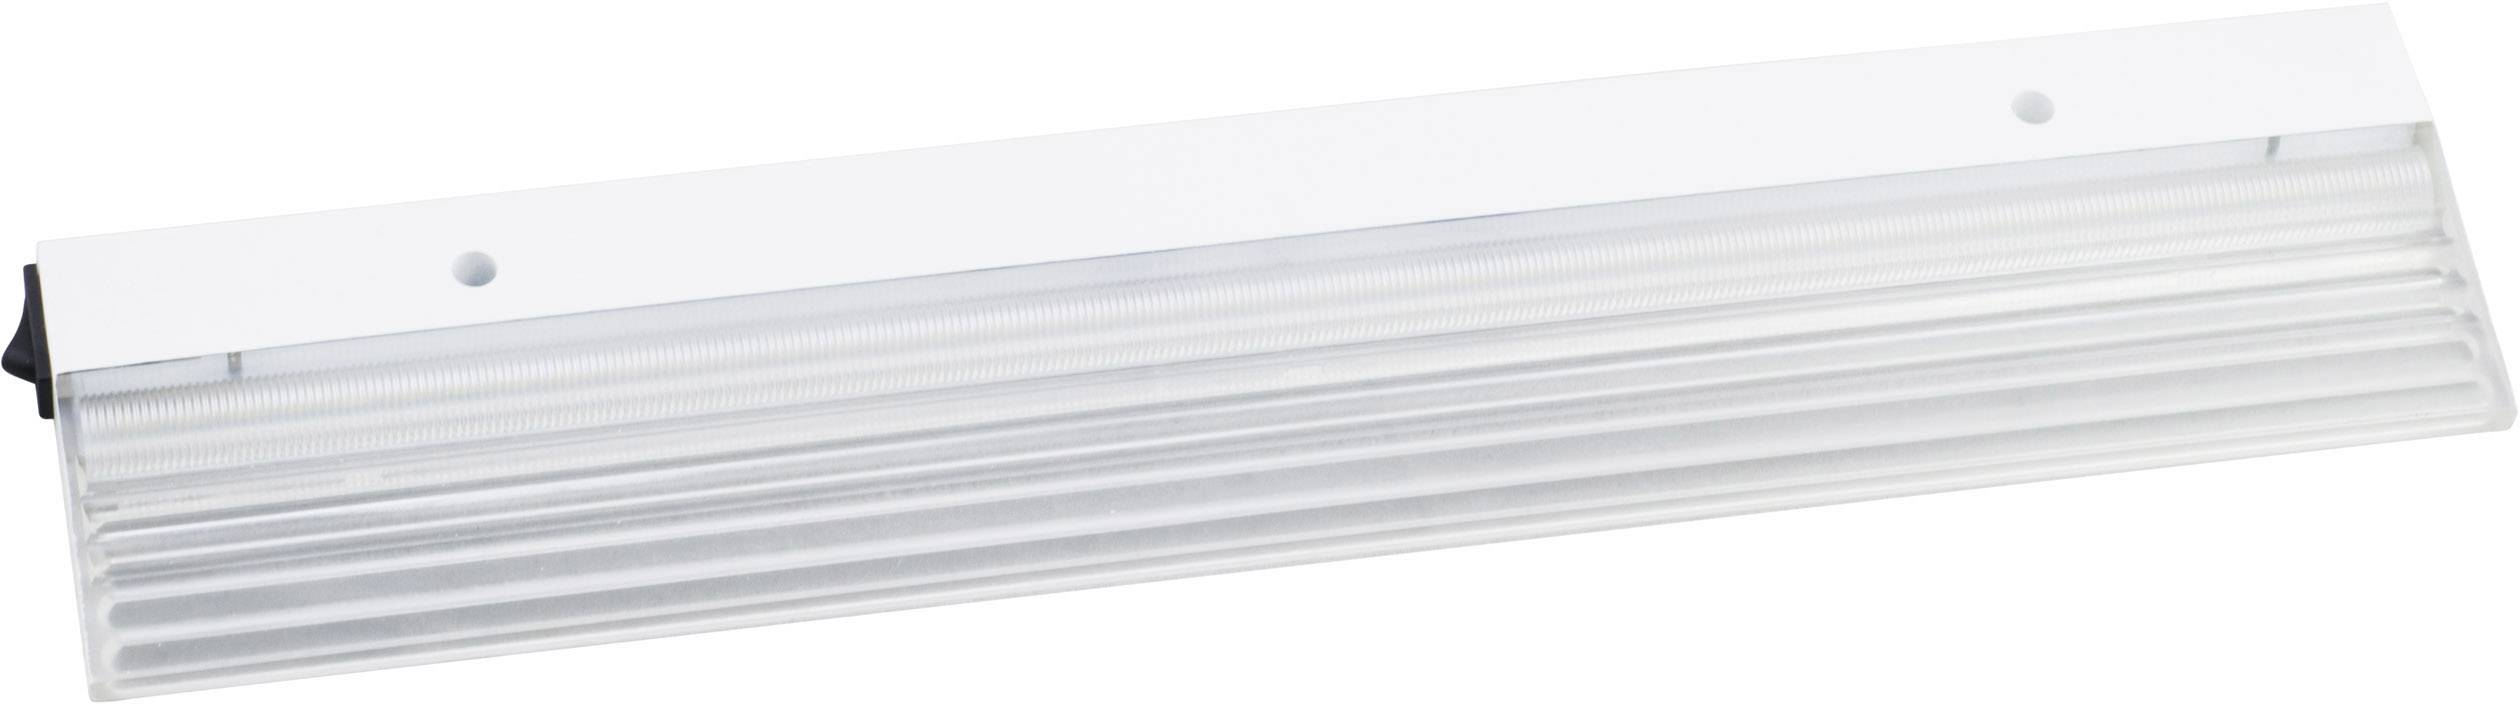 MEGAMAN Megatron MT70150 UNTA Acryl LED-Unterbauleuchte EEK: LED (A++ - E) 10 W Warm-Weiß Weiß